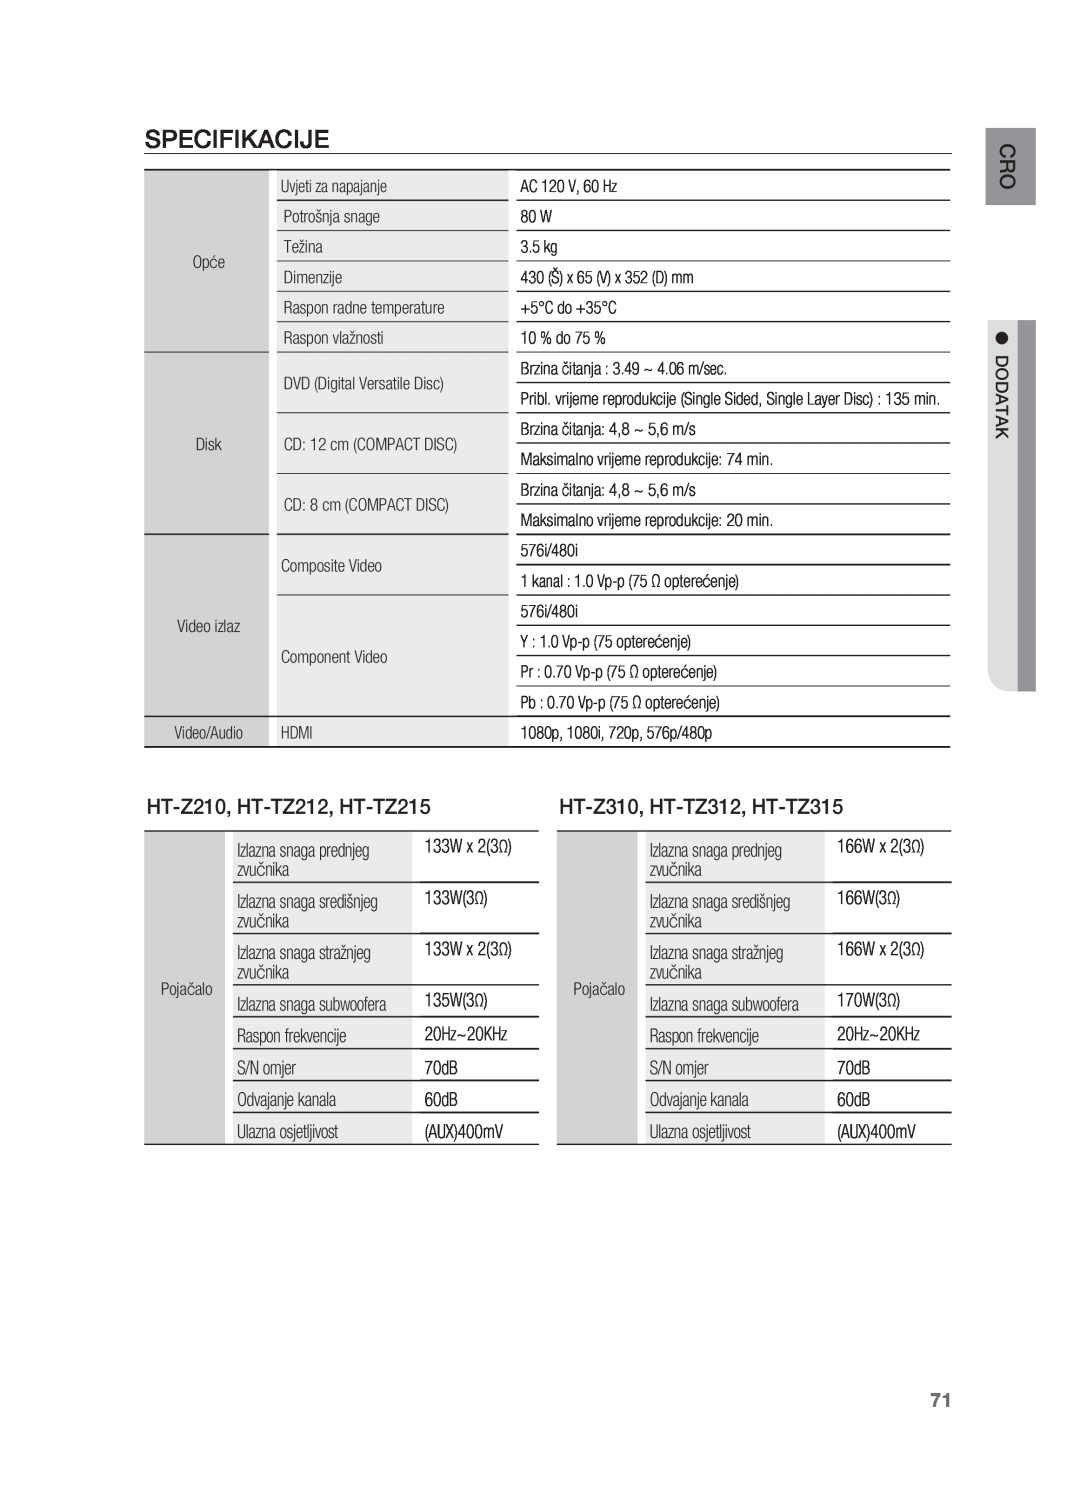 Samsung HT-Z210R/EDC Specifikacije, HT-Z210, HT-TZ212, HT-TZ215, HT-Z310, HT-TZ312, HT-TZ315, O Cr, Opće, Video izlaz 